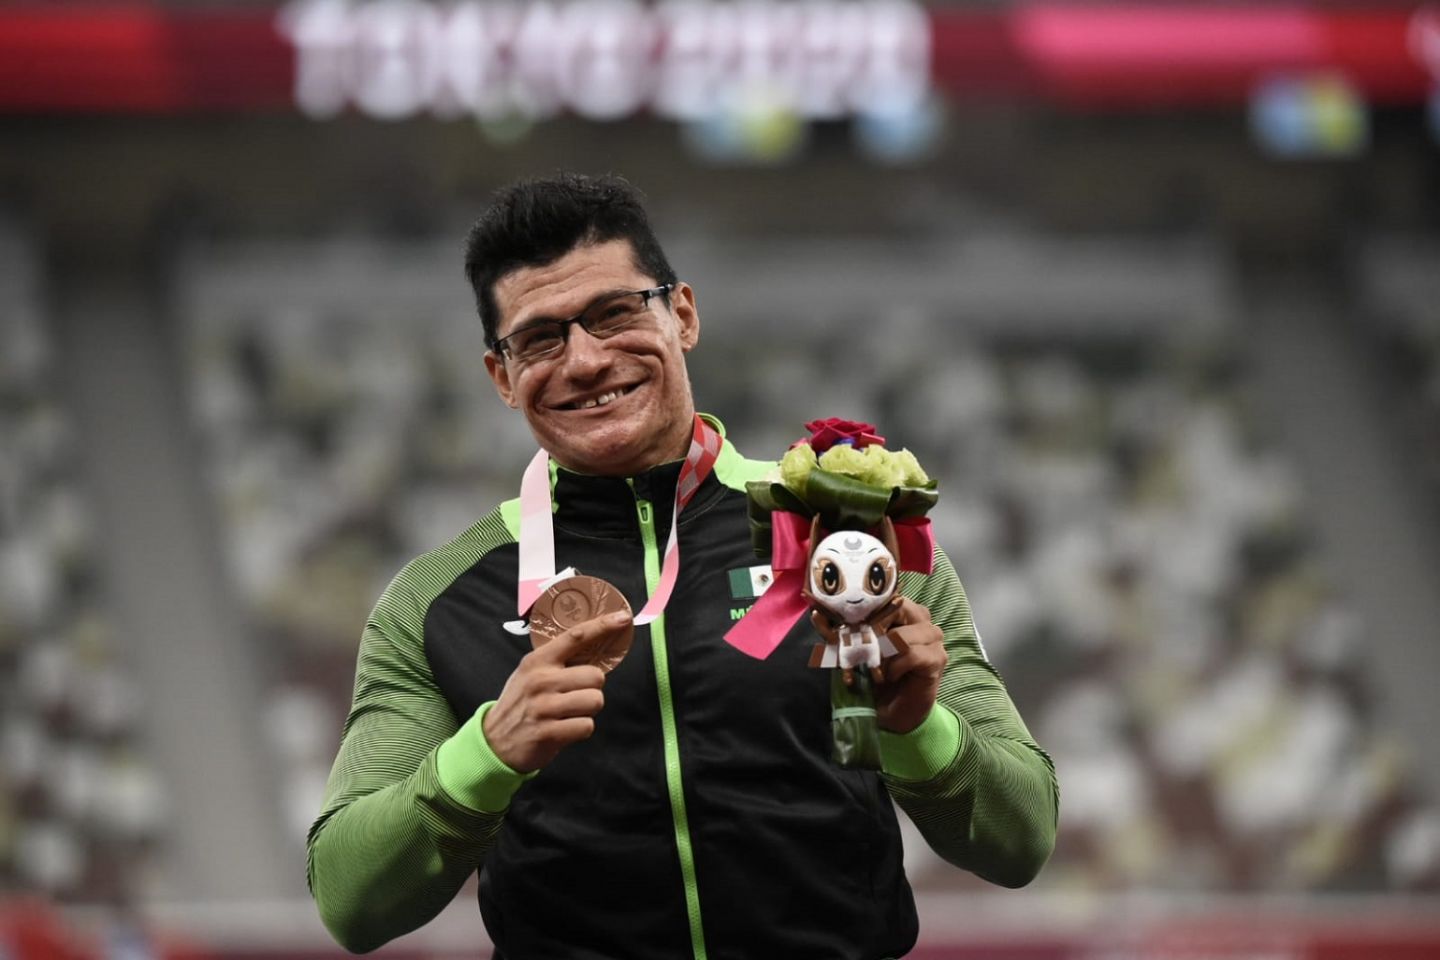  Alcanza Juan  Pablo  Cervantes presea de bronce en juegos paralímpicos dé Tokio 